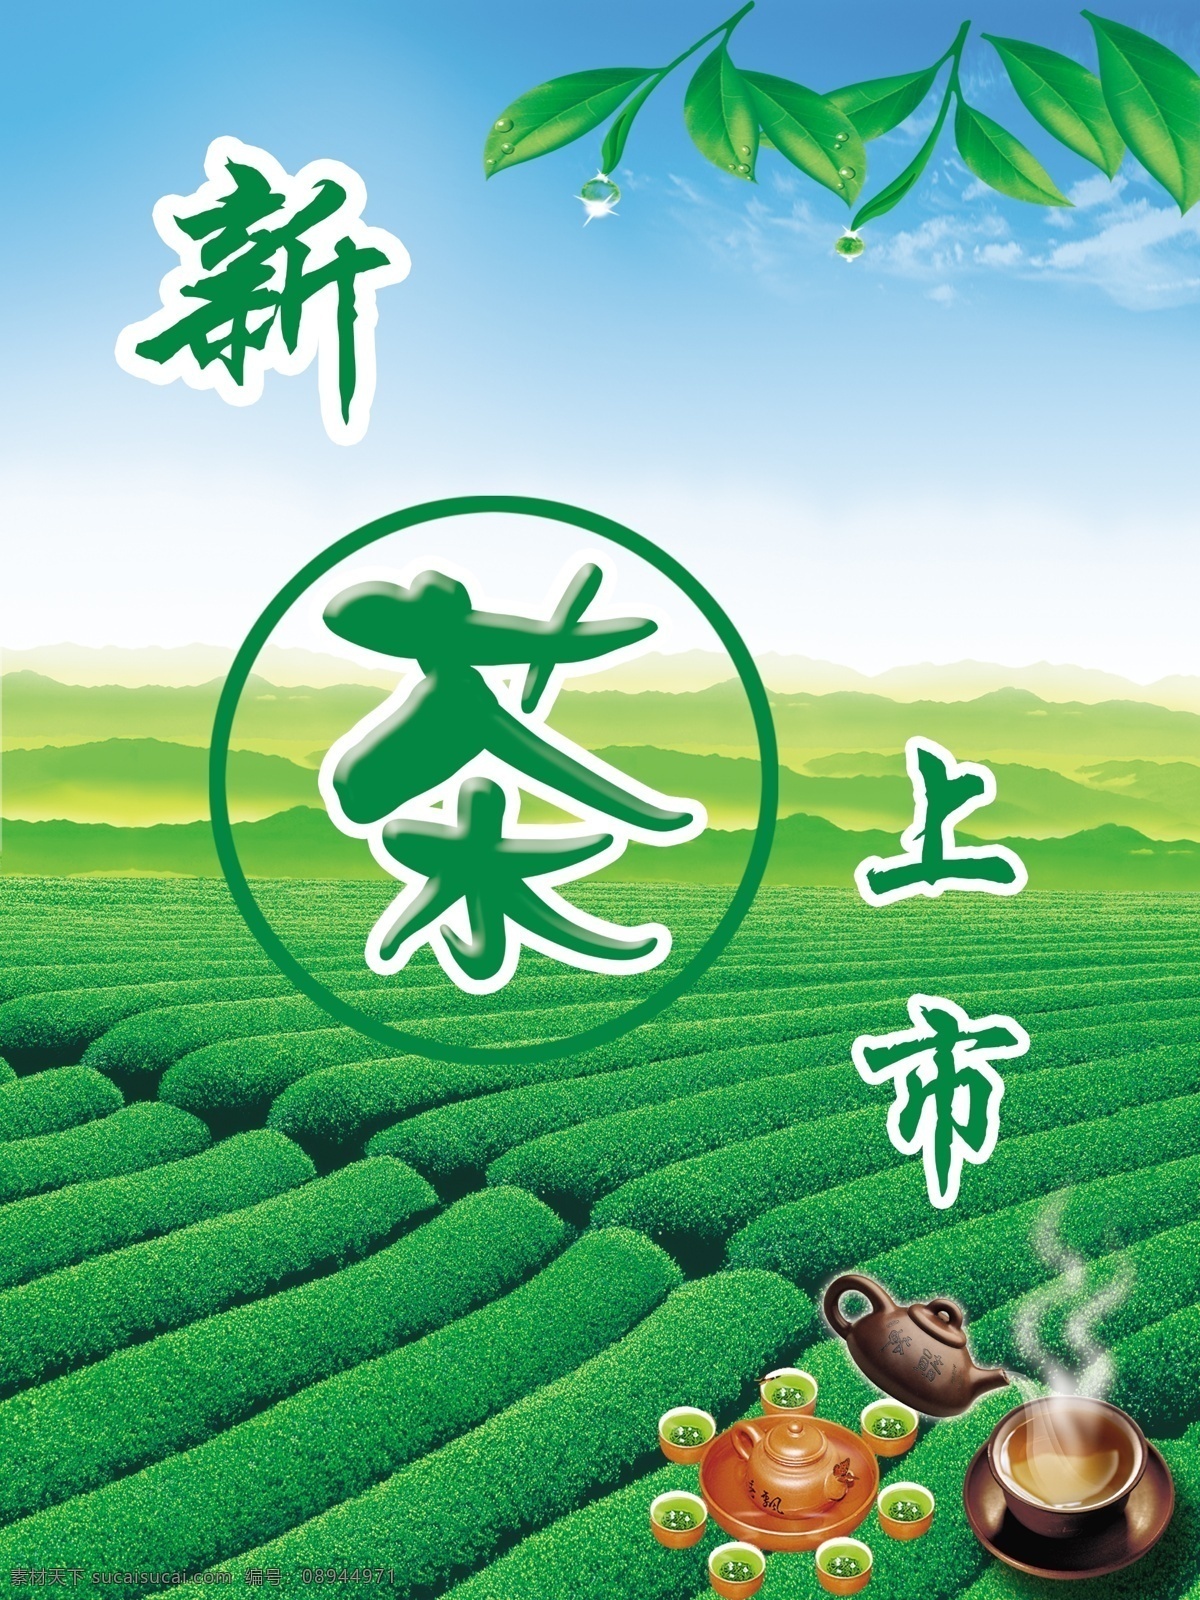 新茶上市 茶 茶叶 绿茶 茶壶 广告设计模板 源文件